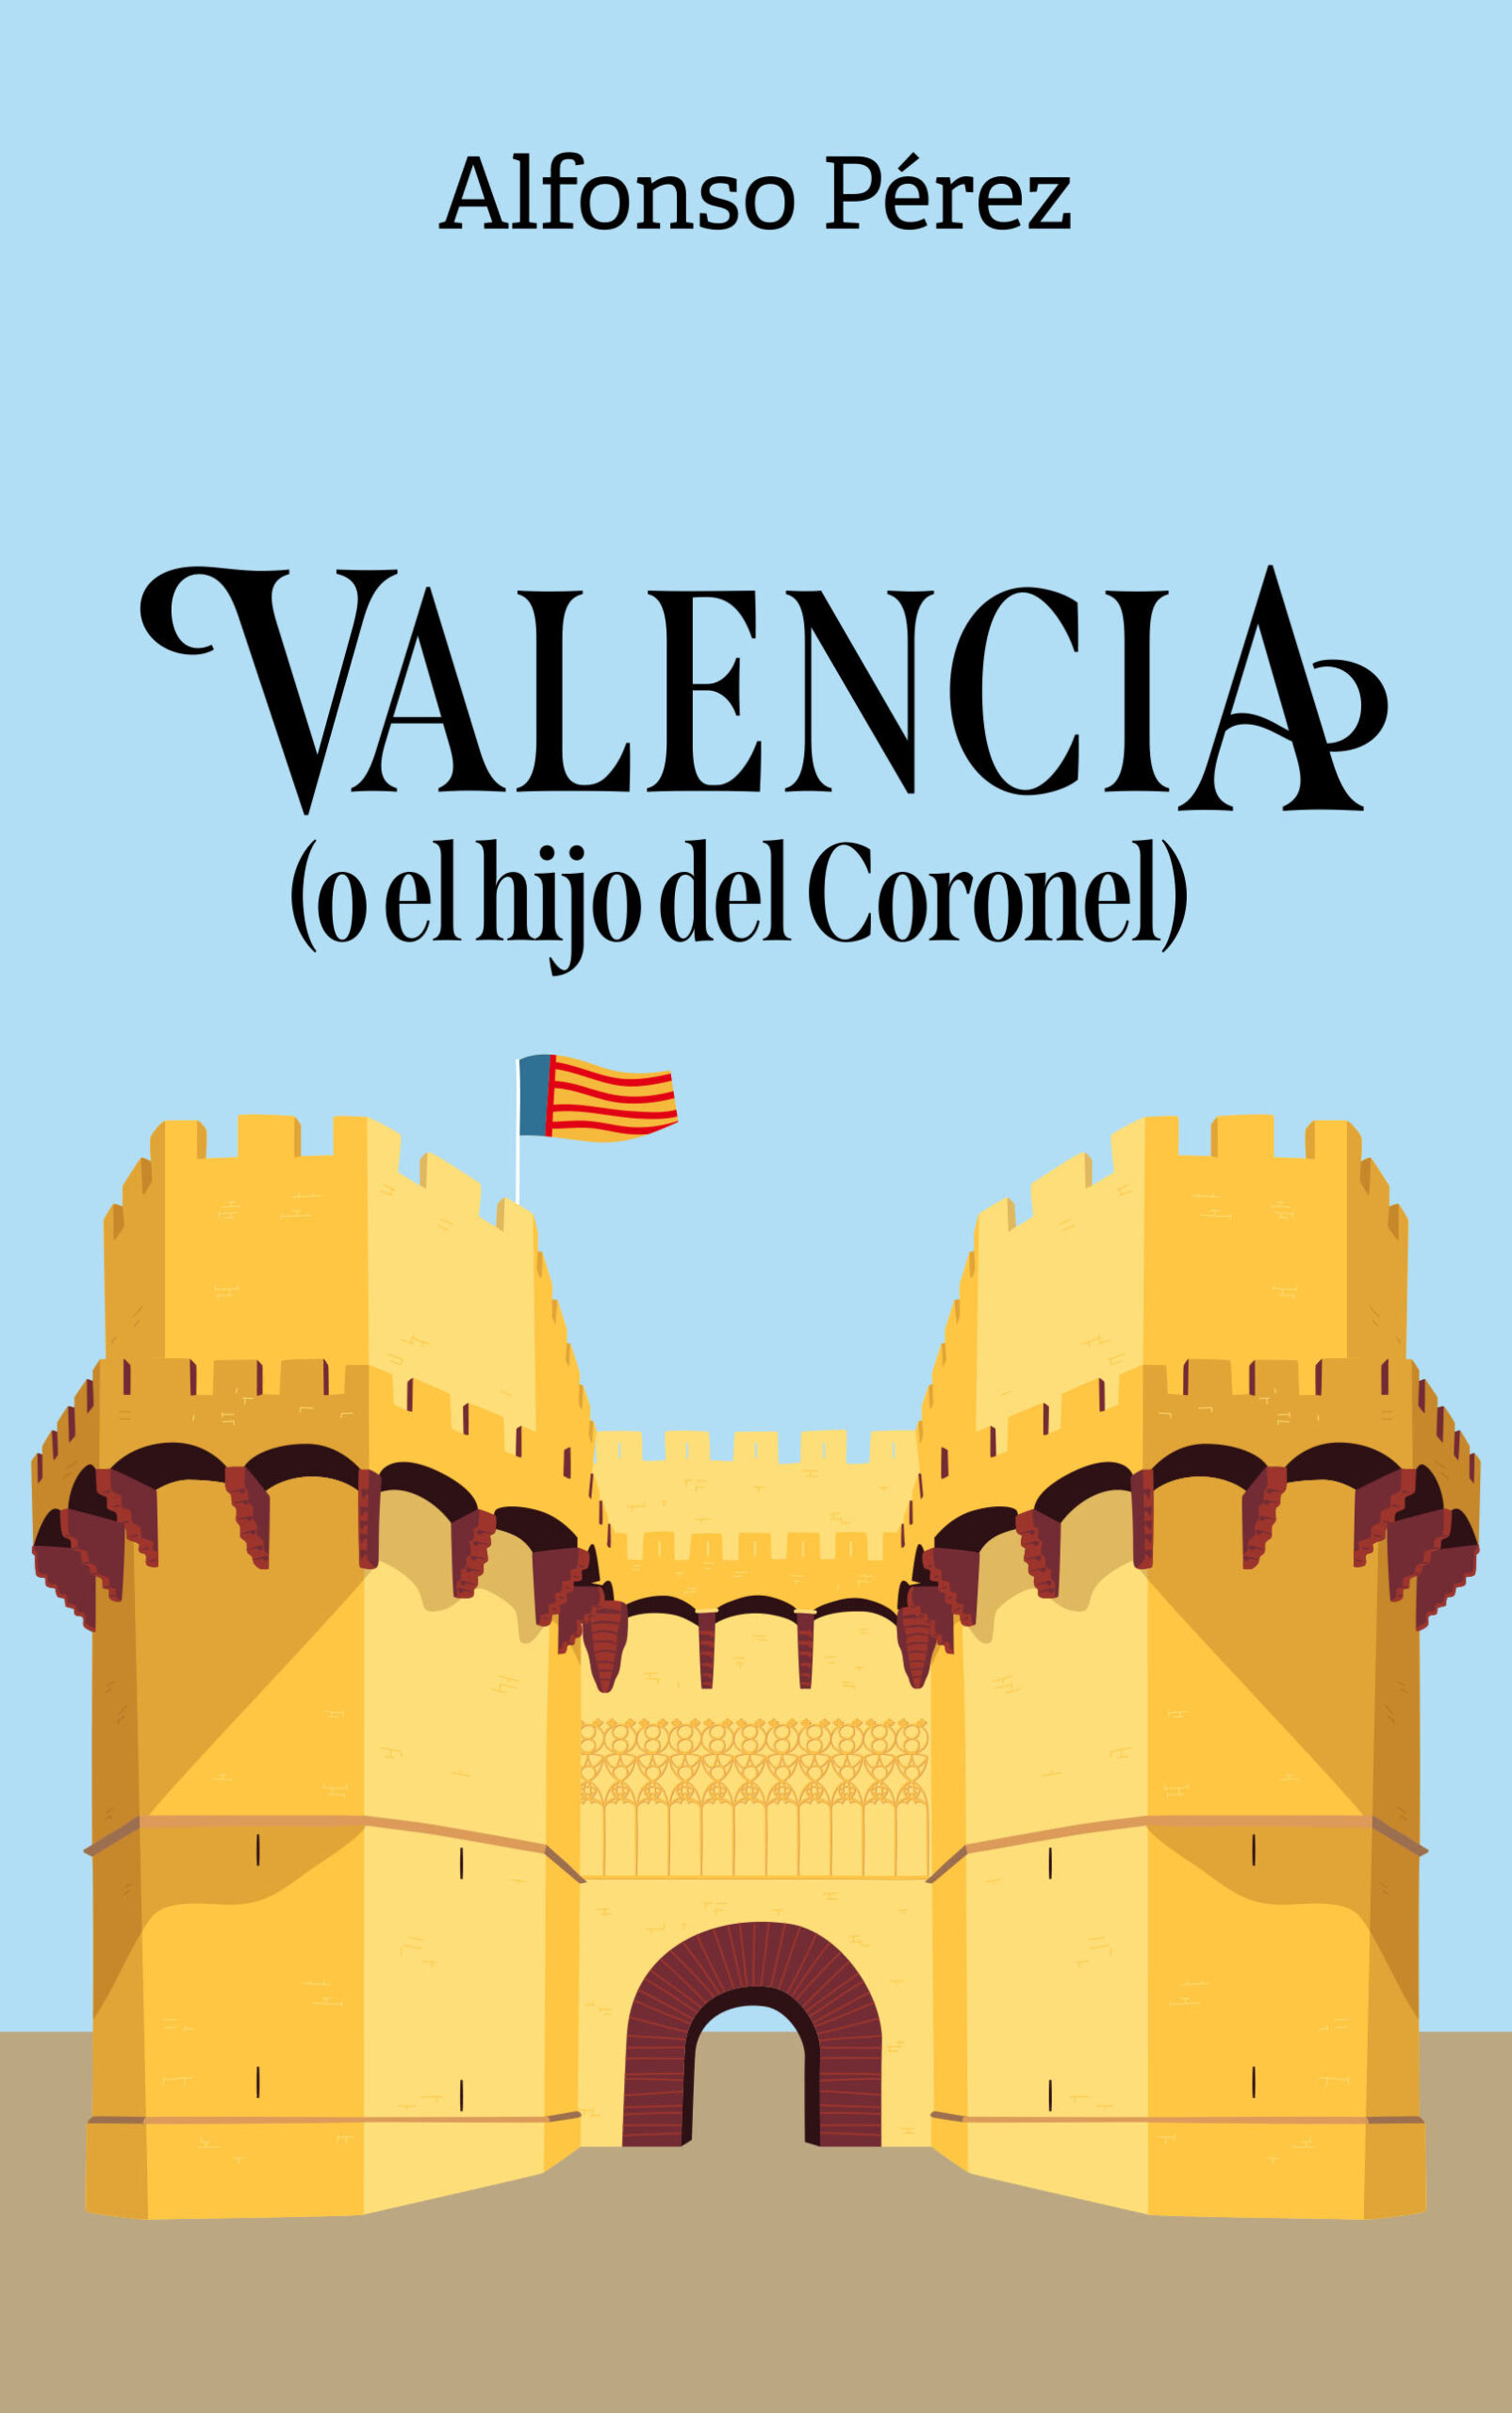 Valencia: (o el hijo del Coronel), de Alfonso Pérez